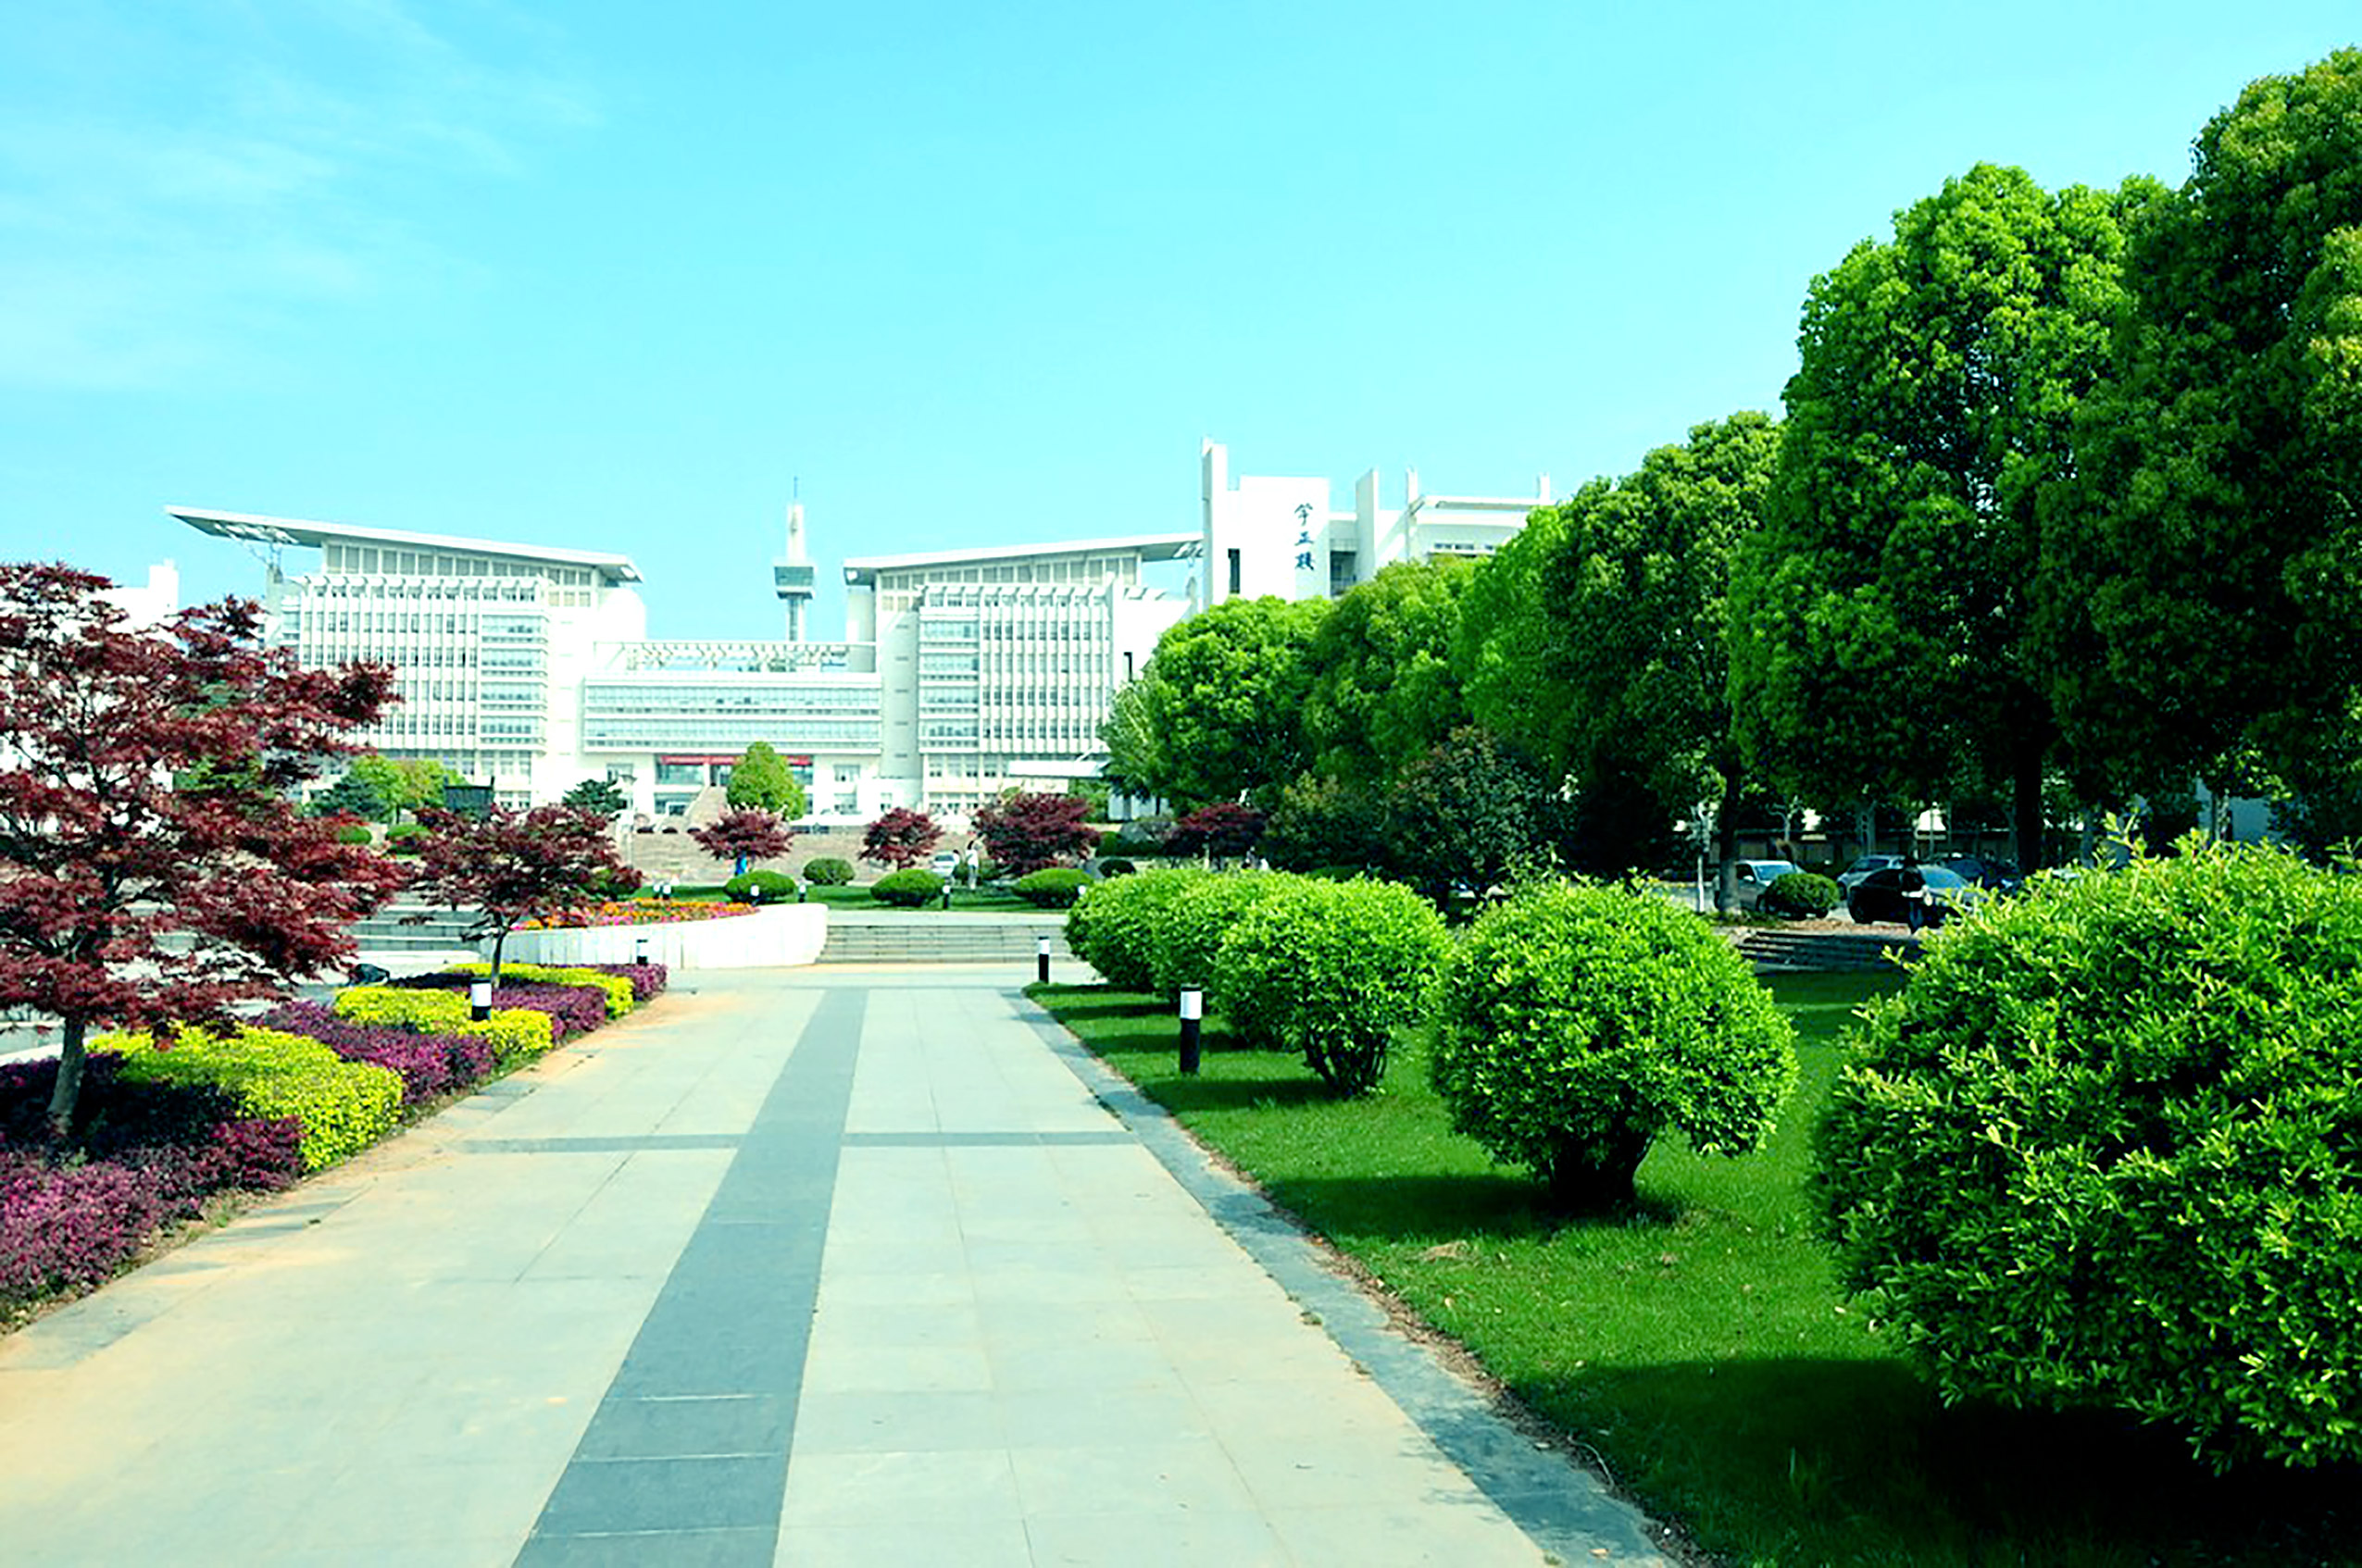  دانشگاه نرمال نانجینگ